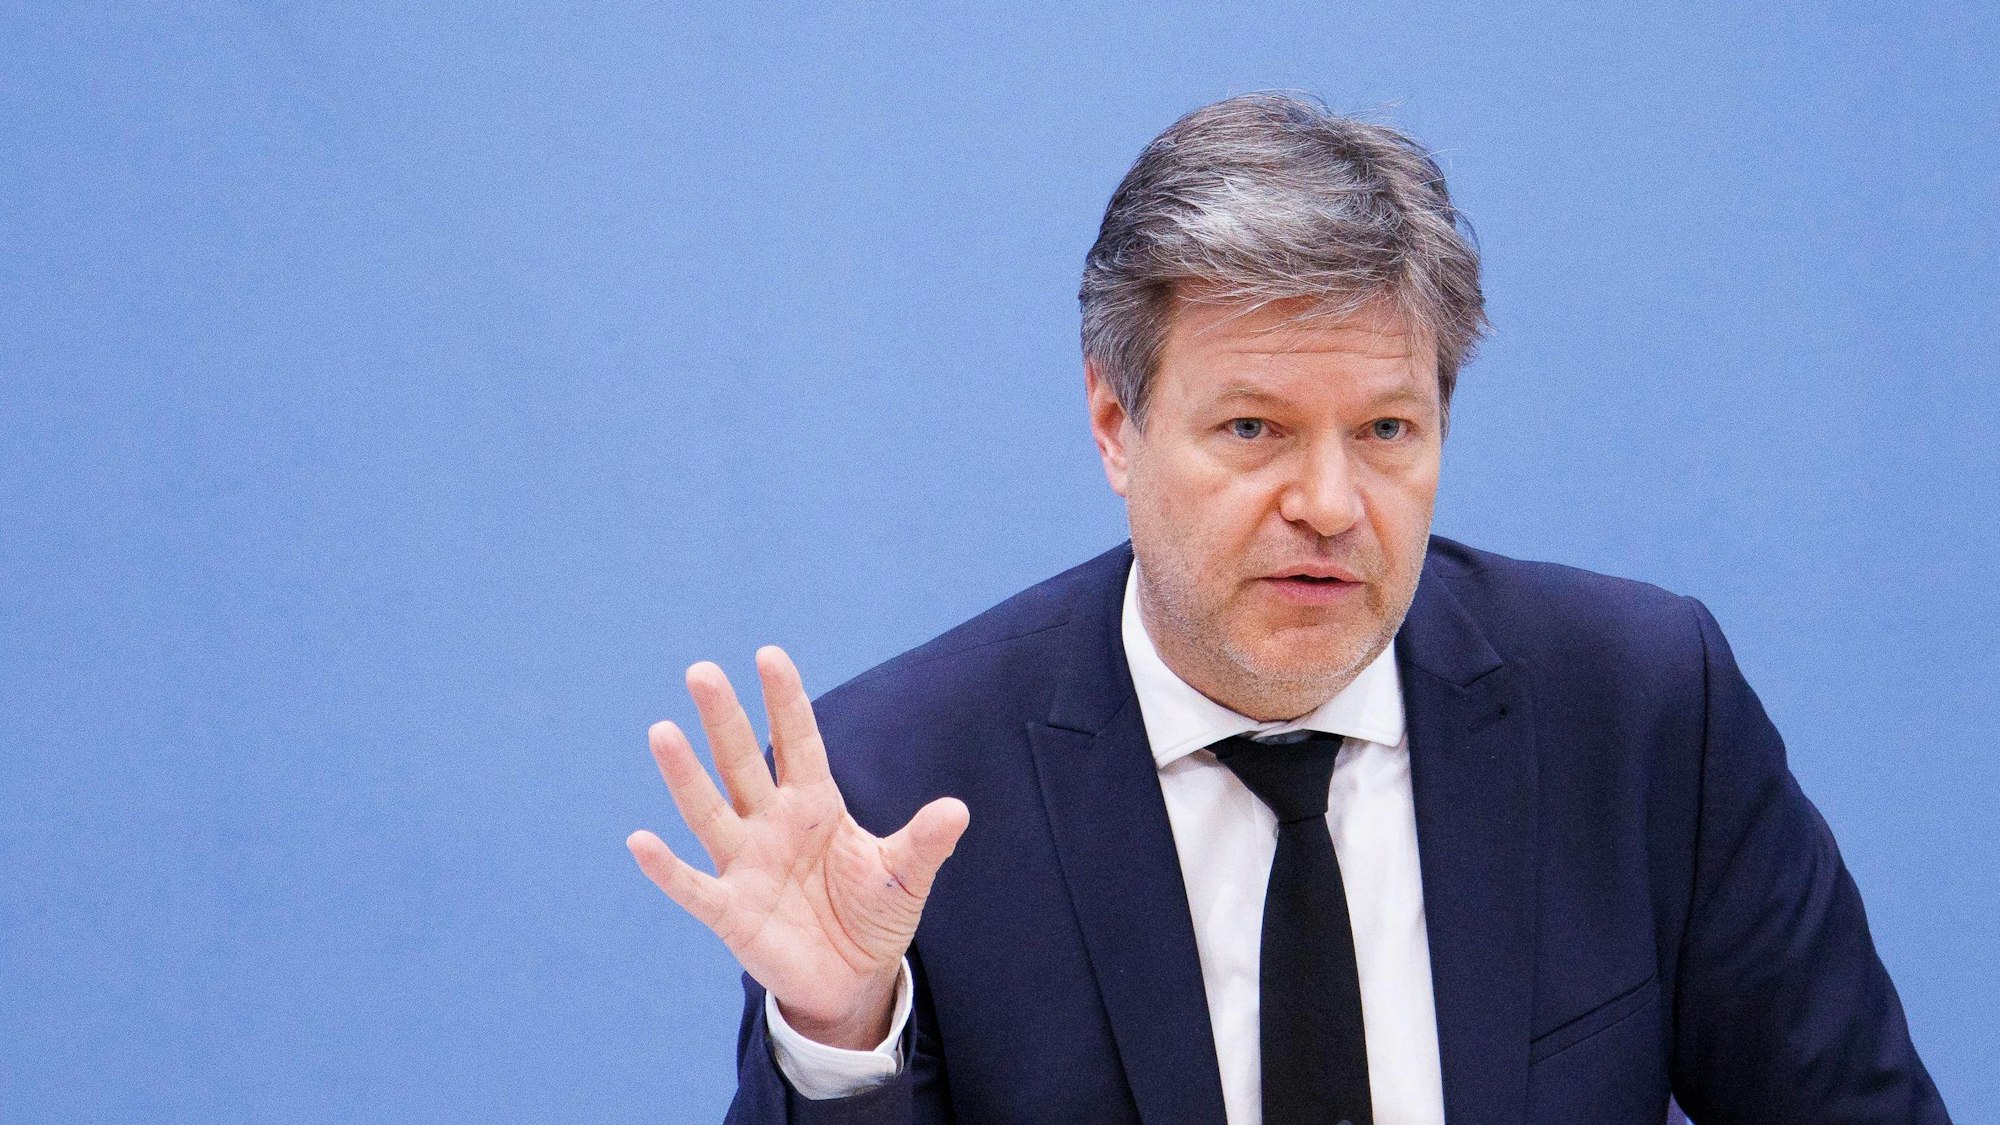 Robert Habeck (Bündnis 90/Die Grünen), Bundesminister für Wirtschaft und Klimaschutz, artikuliert mit der rechten, offenen Hand vor einem blauen Hintergrund.